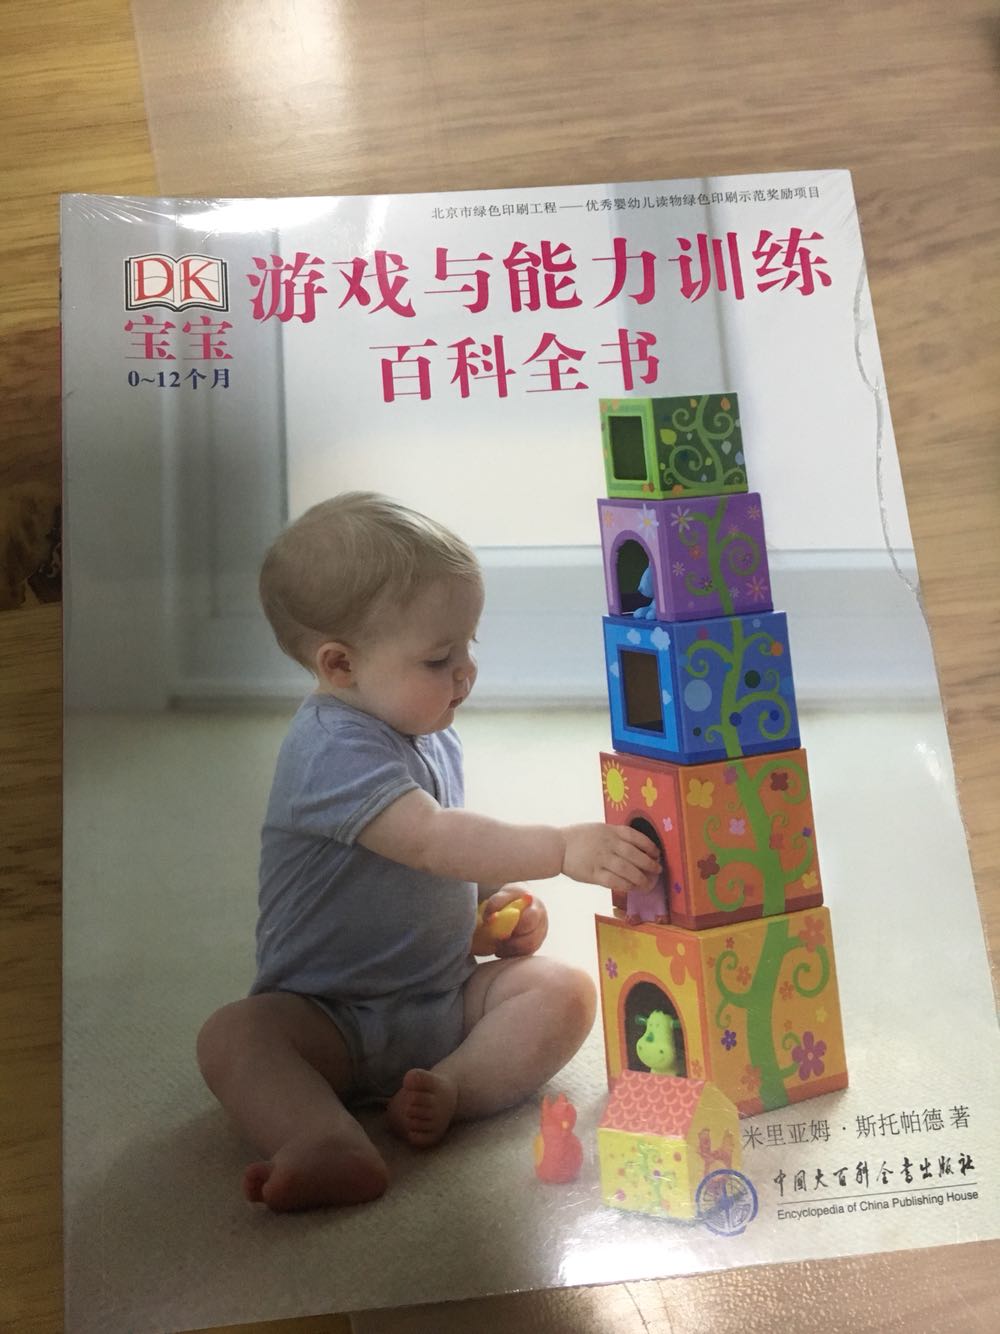 新手妈妈学习了，很喜欢DK出版的书，相比国内的书指导得更好些。